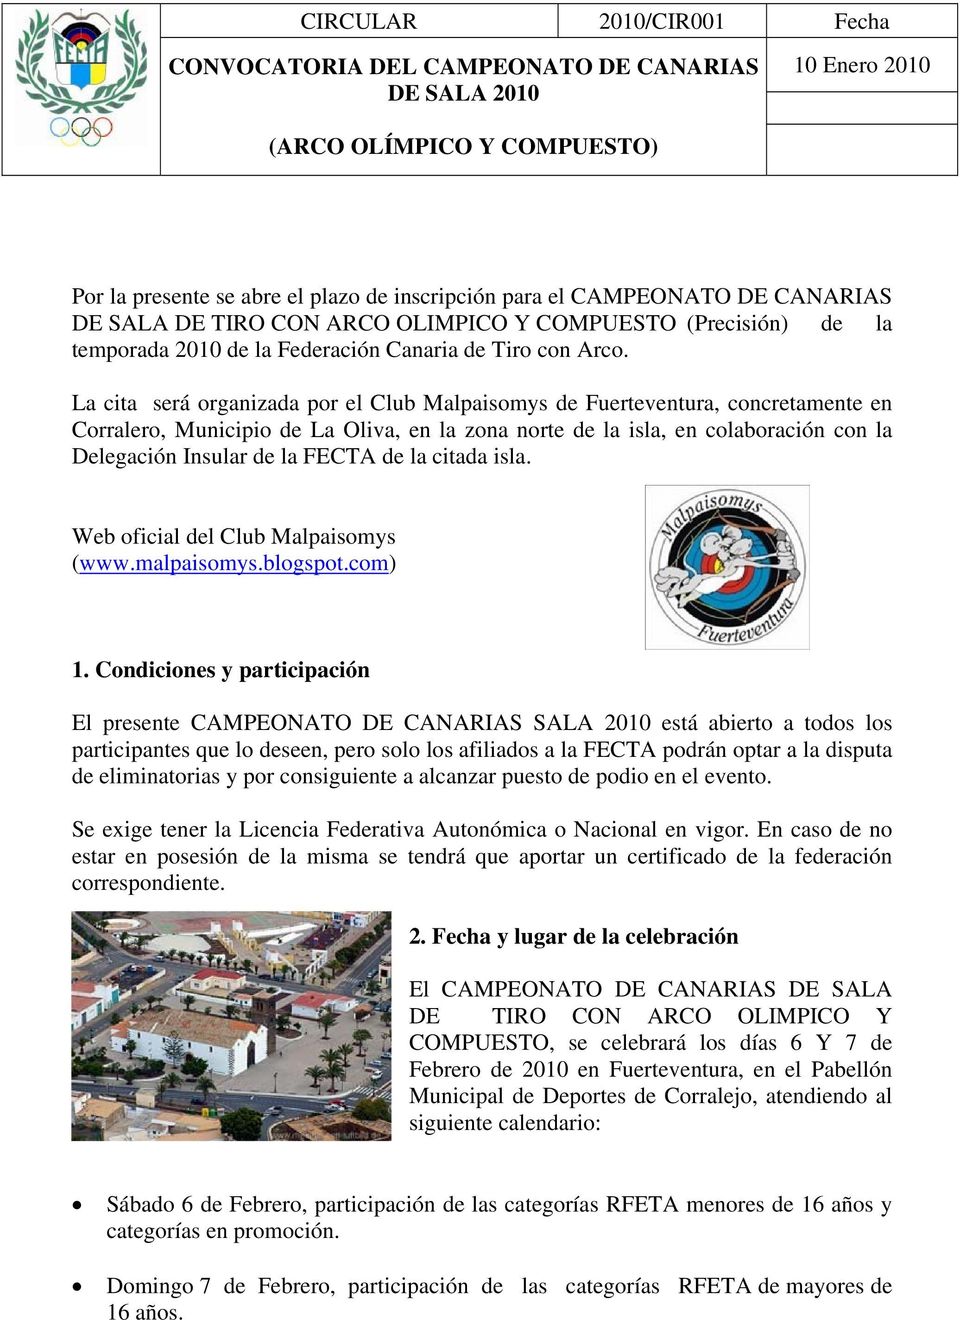 La cita será organizada por el Club Malpaisomys de Fuerteventura, concretamente en Corralero, Municipio de La Oliva, en la zona norte de la isla, en colaboración con la Delegación Insular de la FECTA